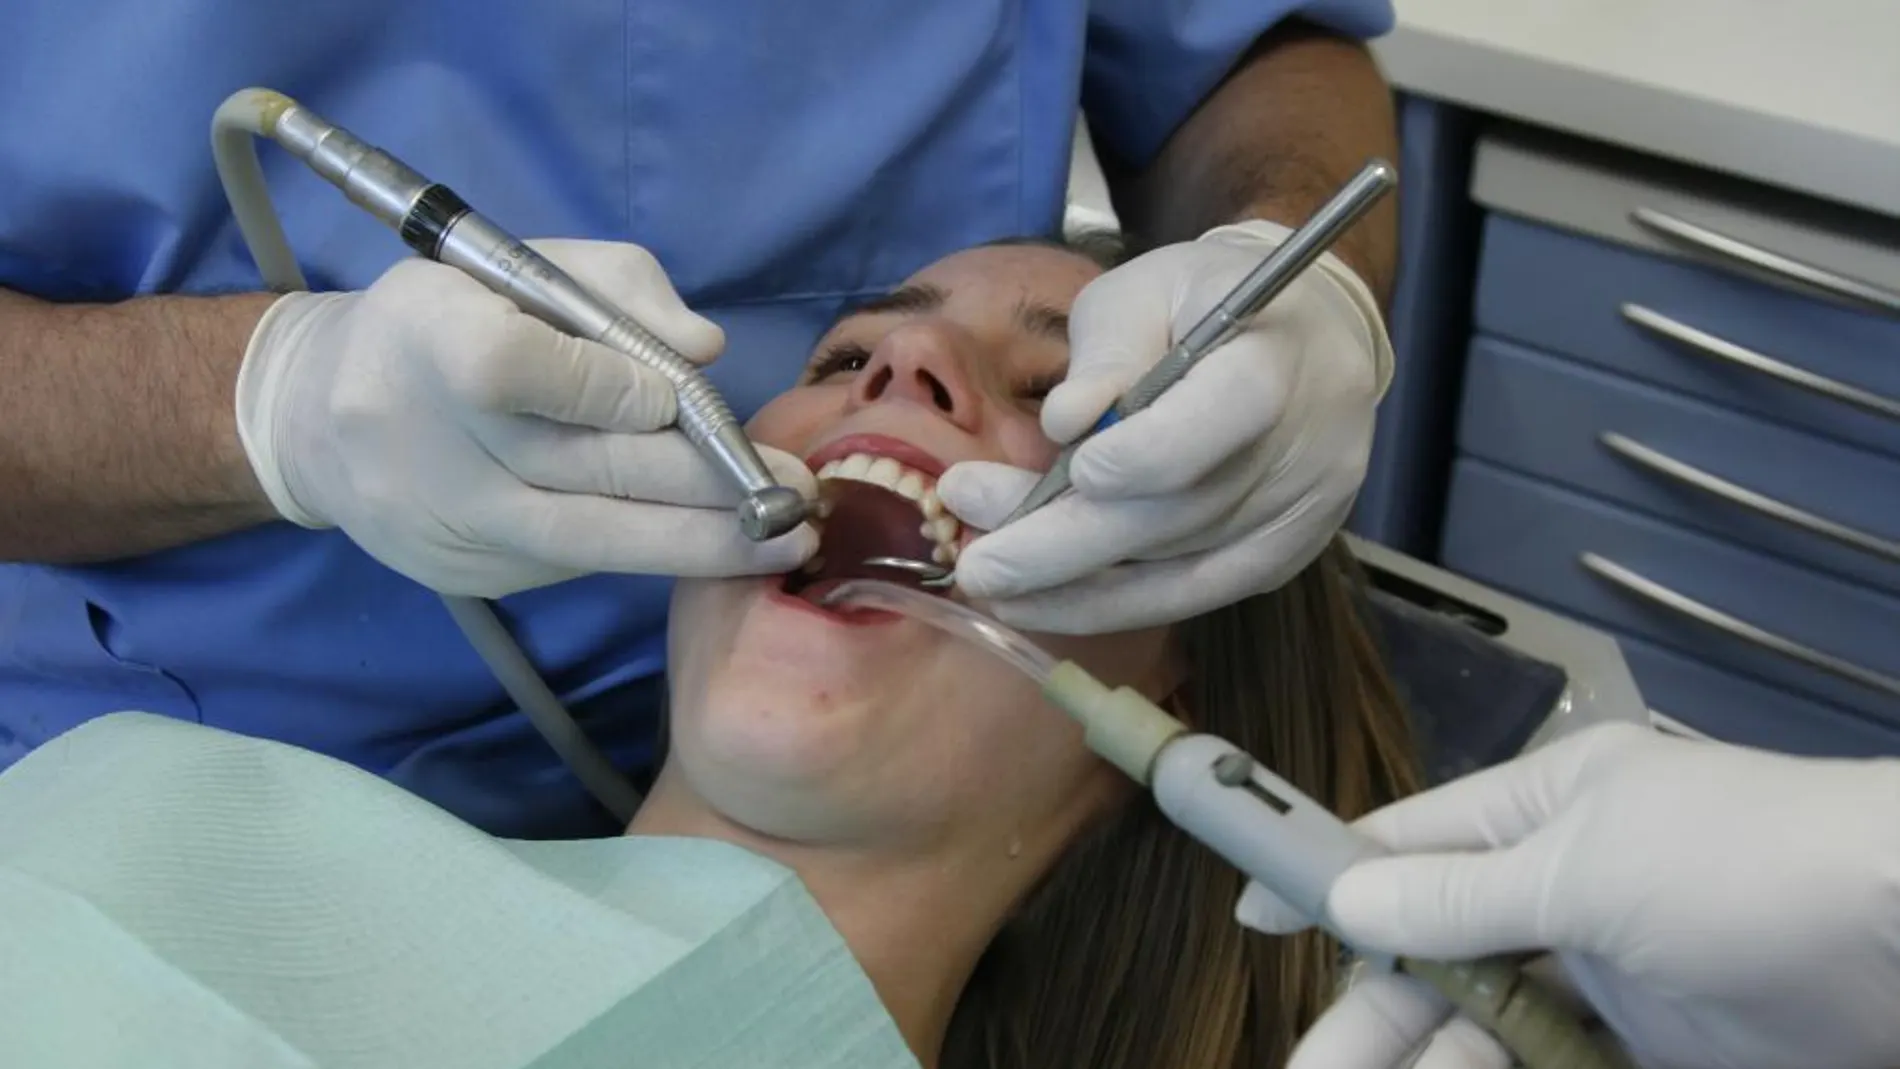 Una paciente en una clínica dental, en una imagen de archivo